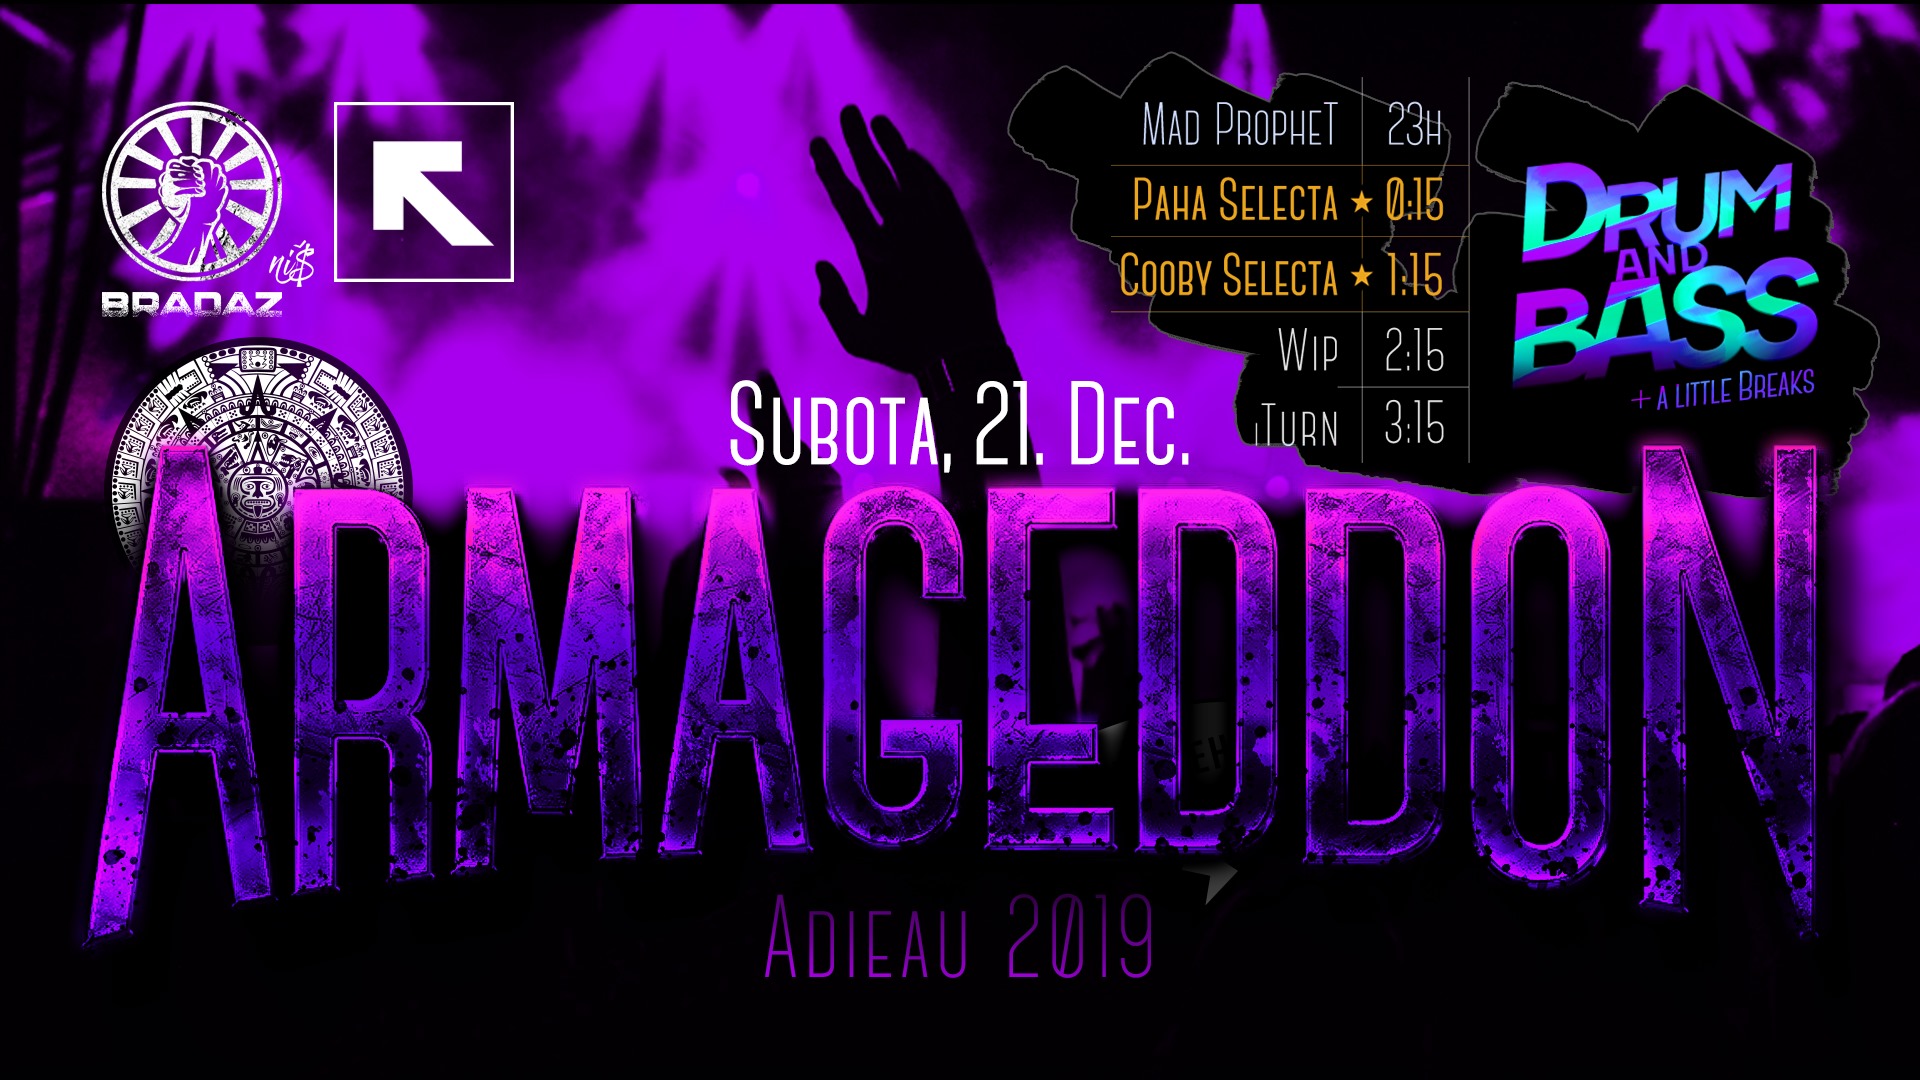 Bradaz - Armageddon Adieau 2019 - 21. Dec. - Feedback